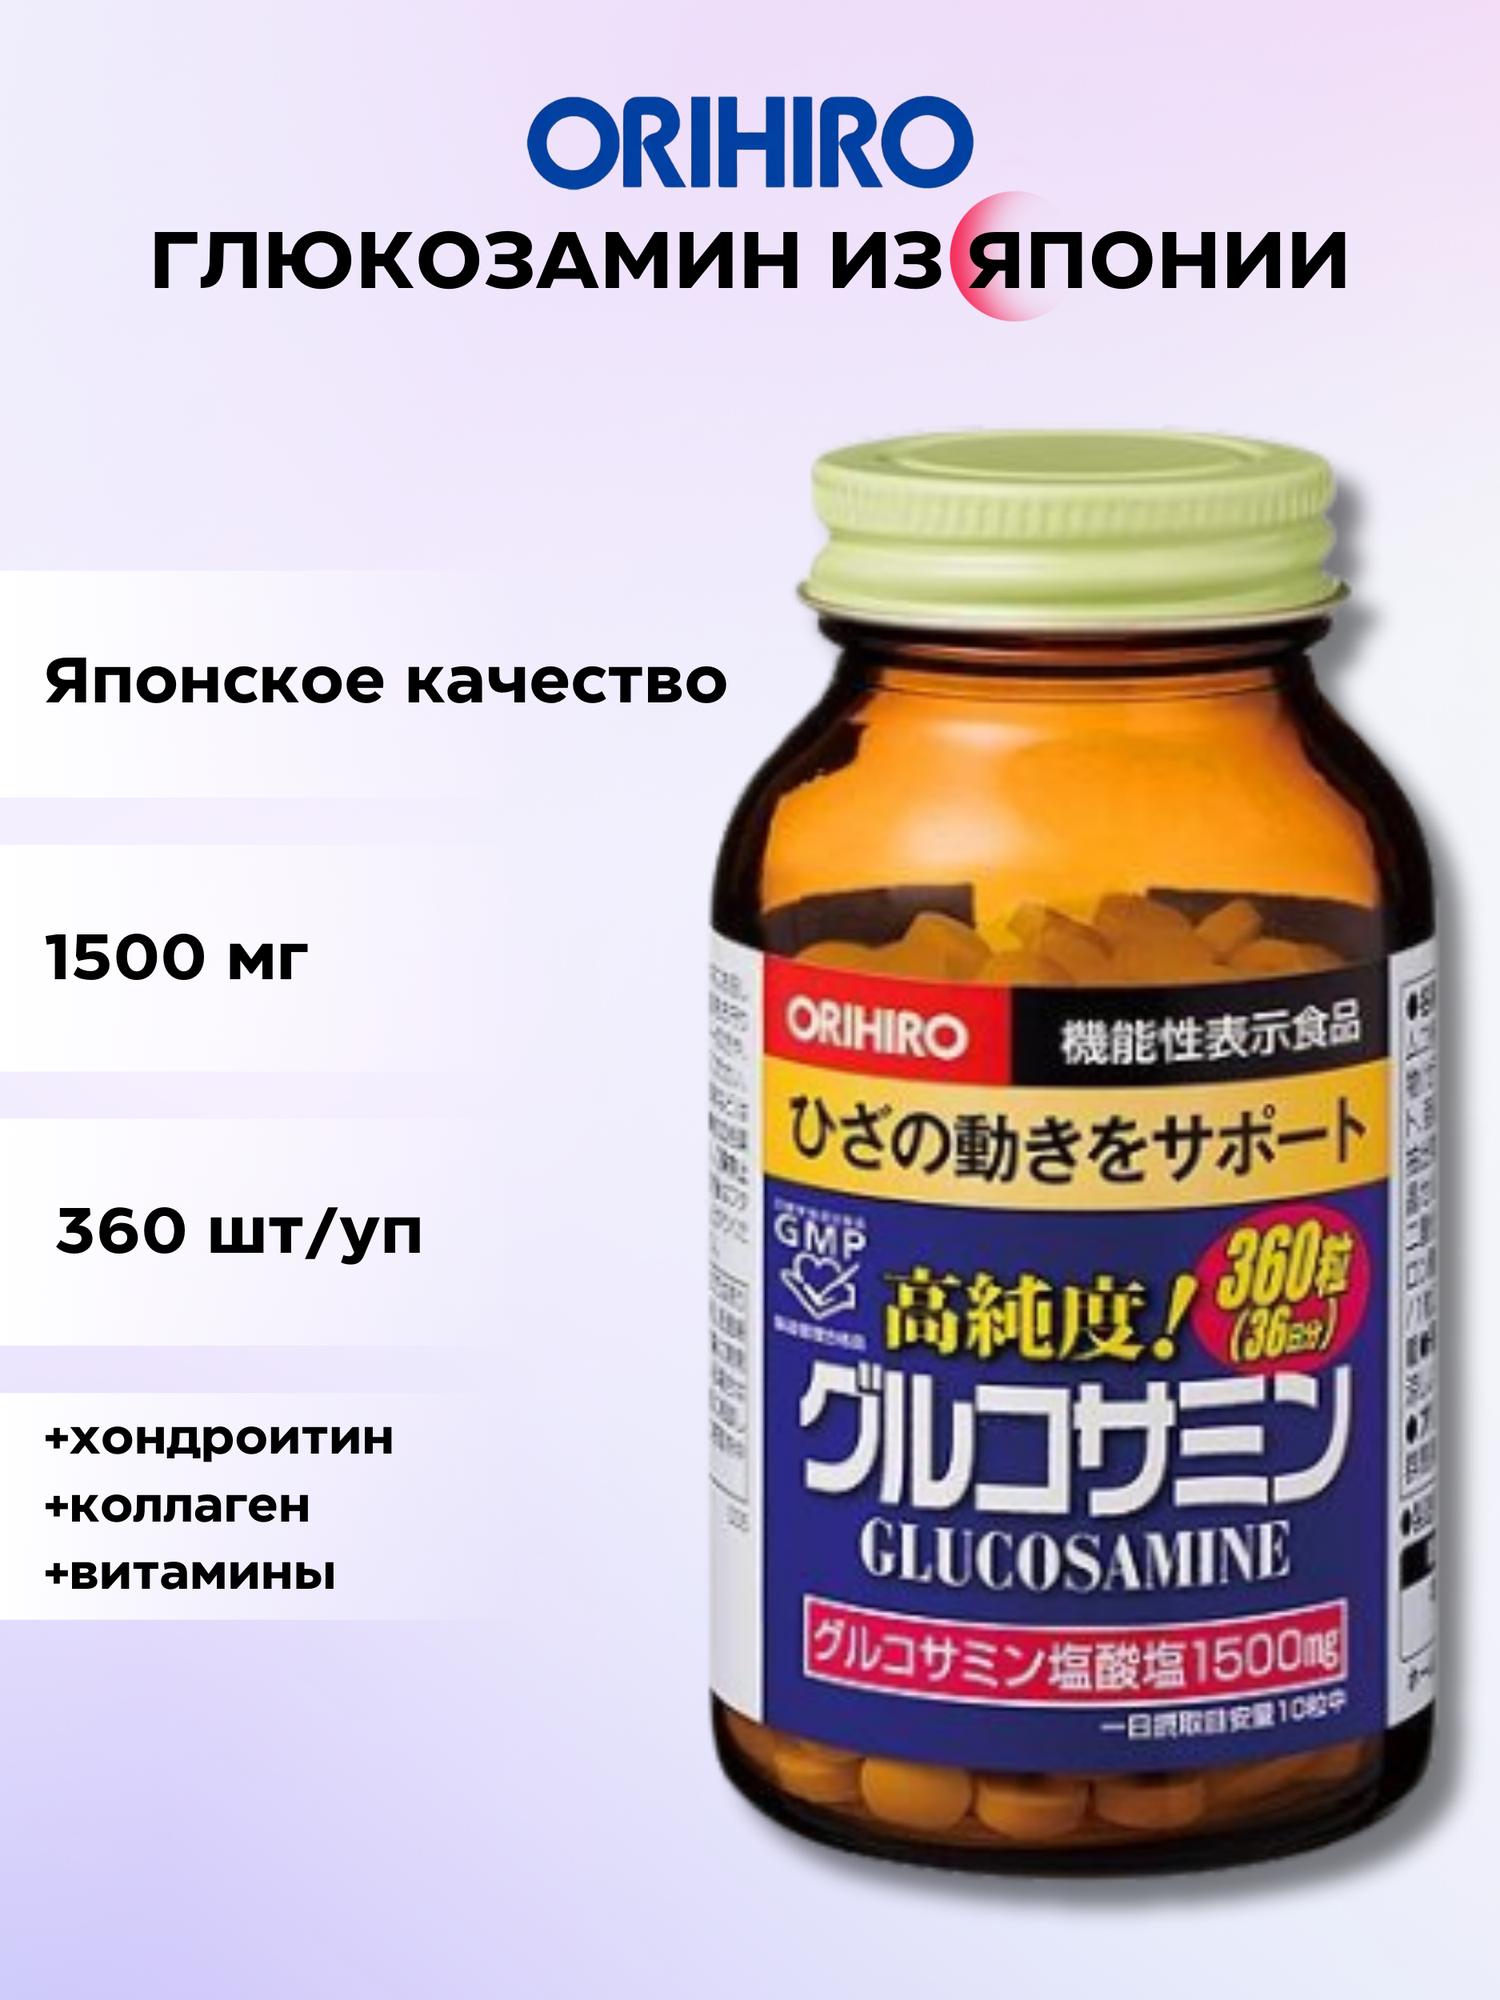 ORIHIRO Глюкозамин с хондроитином и коллагеном - витамины для суставов, костей, хрящей на 36 дней